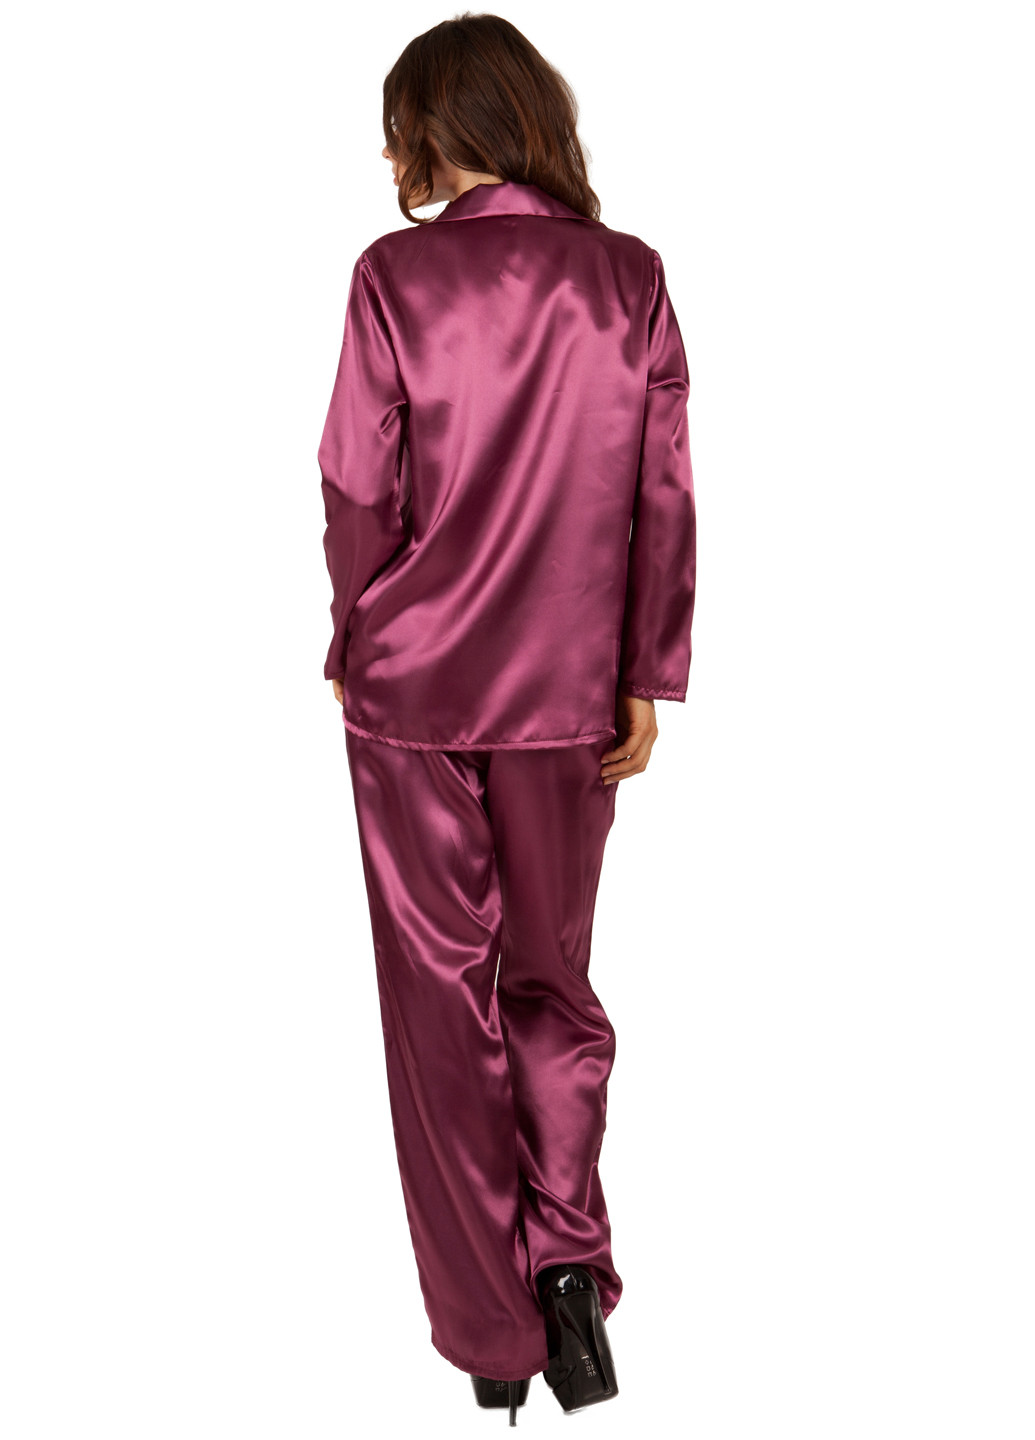 Бордовая всесезон пижама (брюки, кофта) Miorre